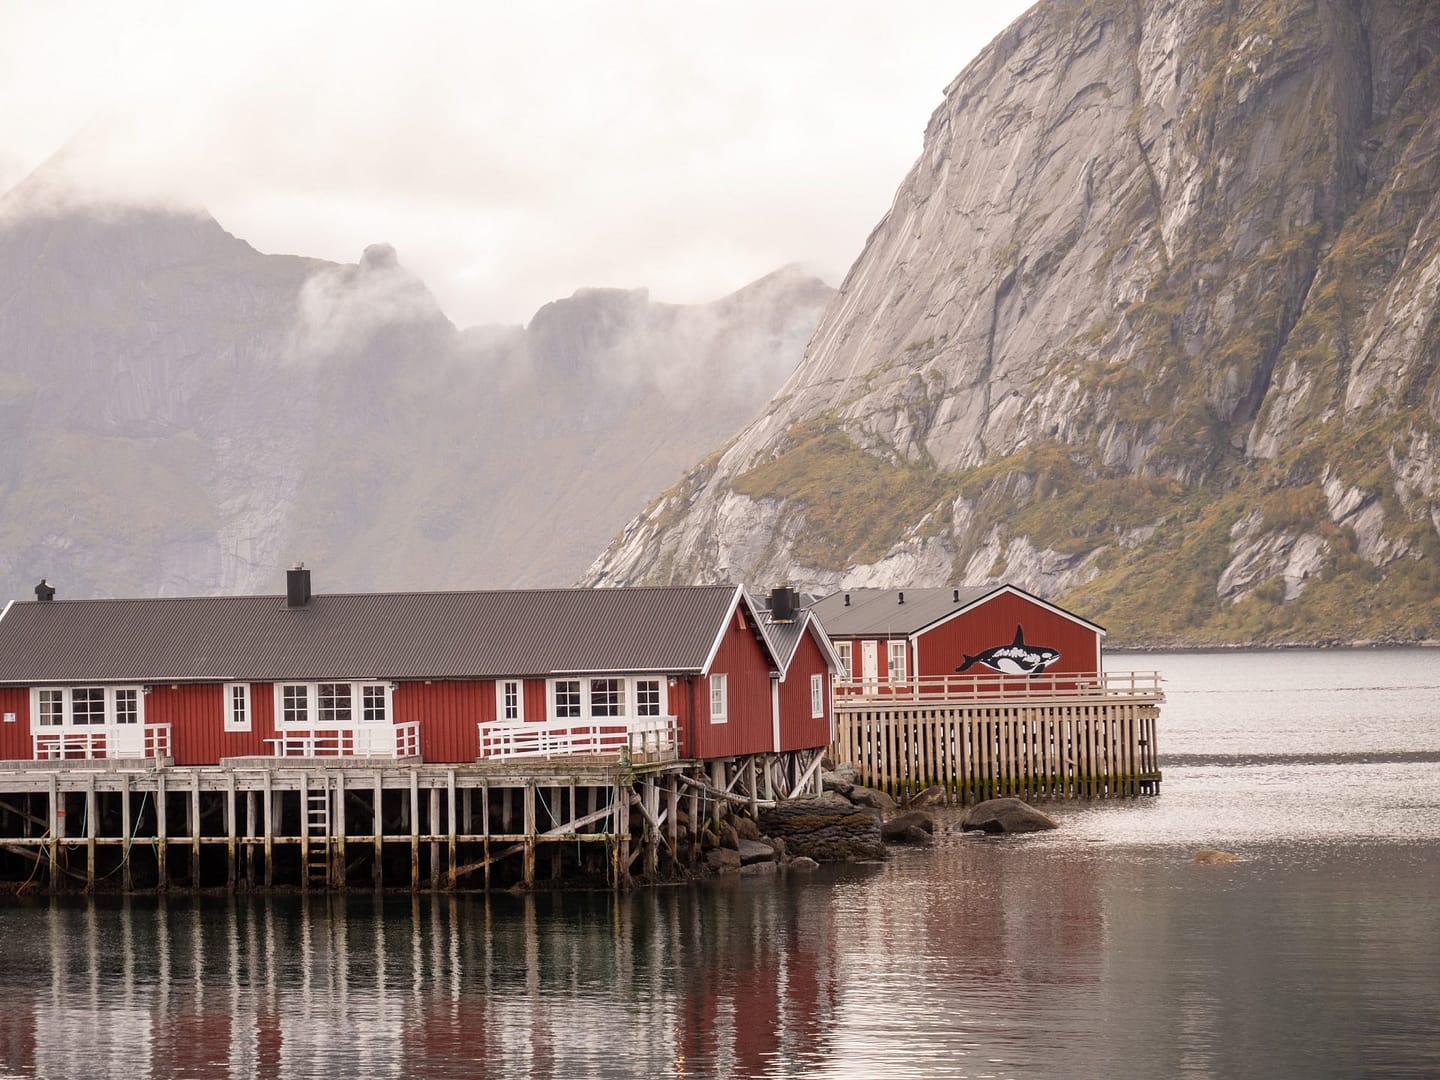 Hamnøy's rorbuer hutten, ervaar de authenieke Noorse cultuur